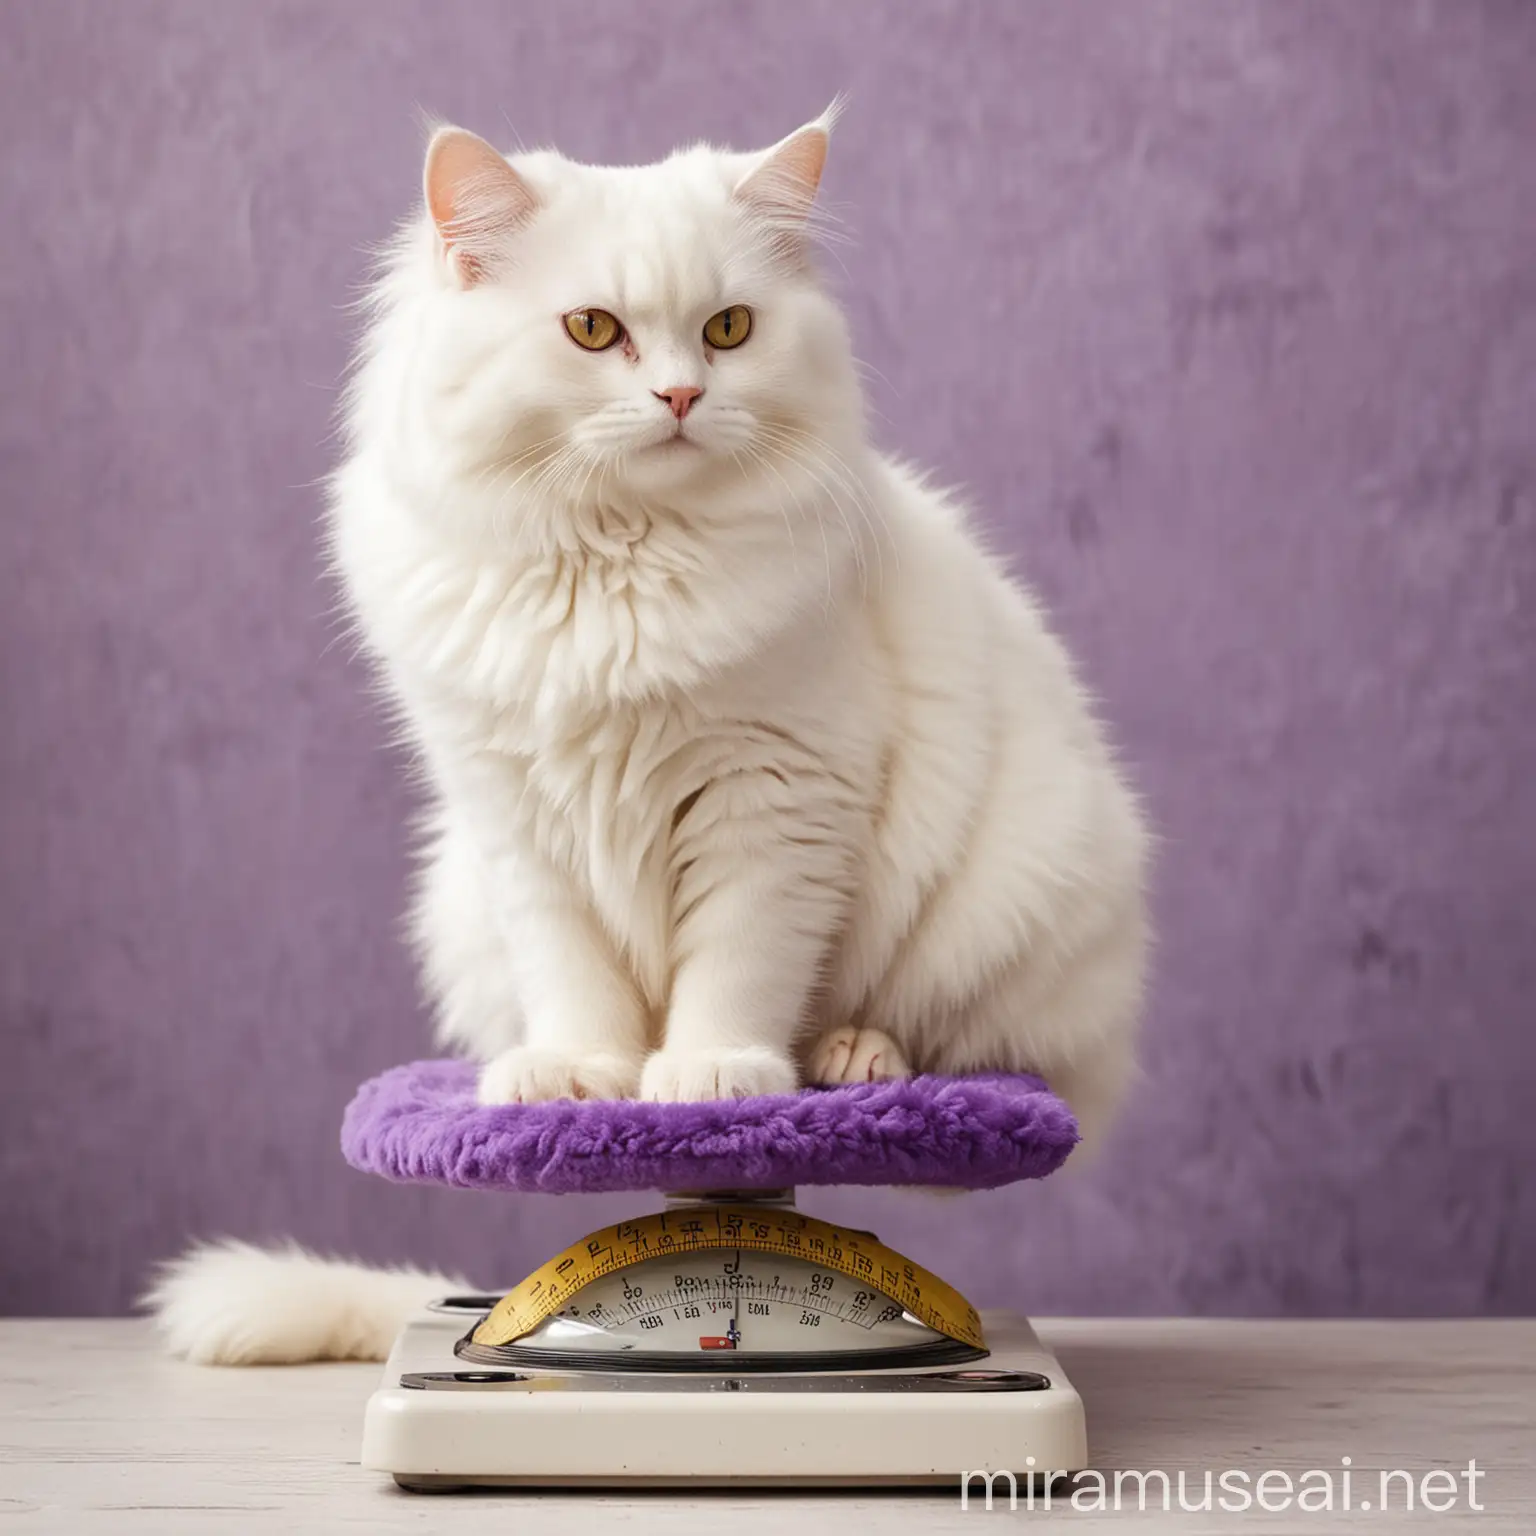 пушистый белый кот сидит на весах. Сиреневые и желтые тона